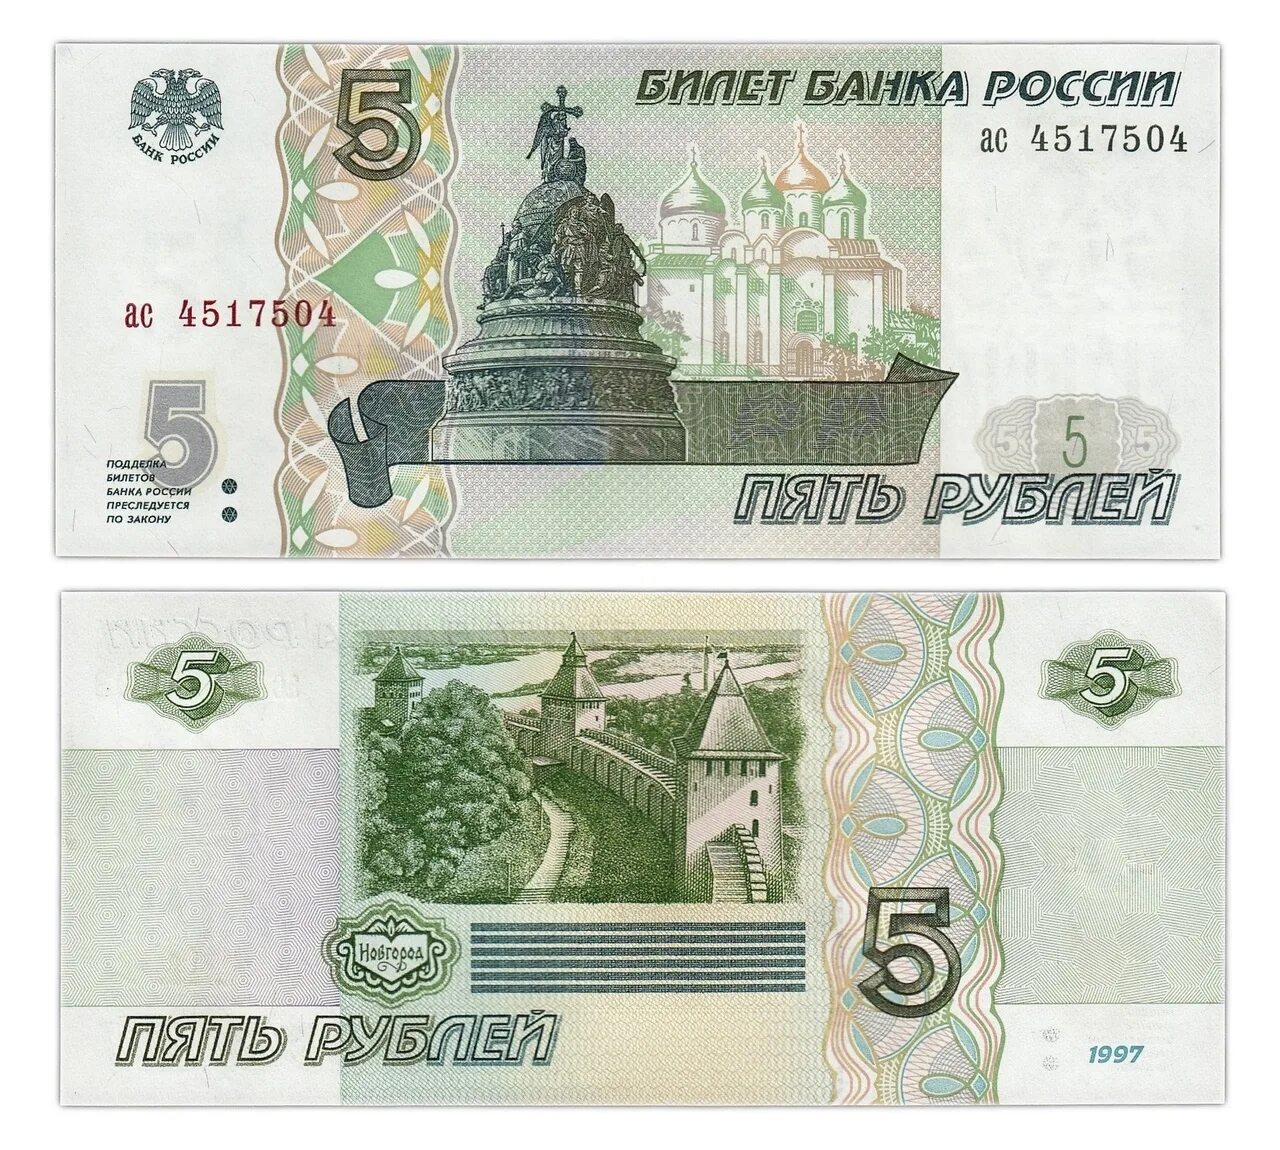 5 бумажные купюры. Банкнота 5 рублей. Изображение денежных купюр. Образцы денежных купюр. Банкнота 5 рублей образца 1997 года.